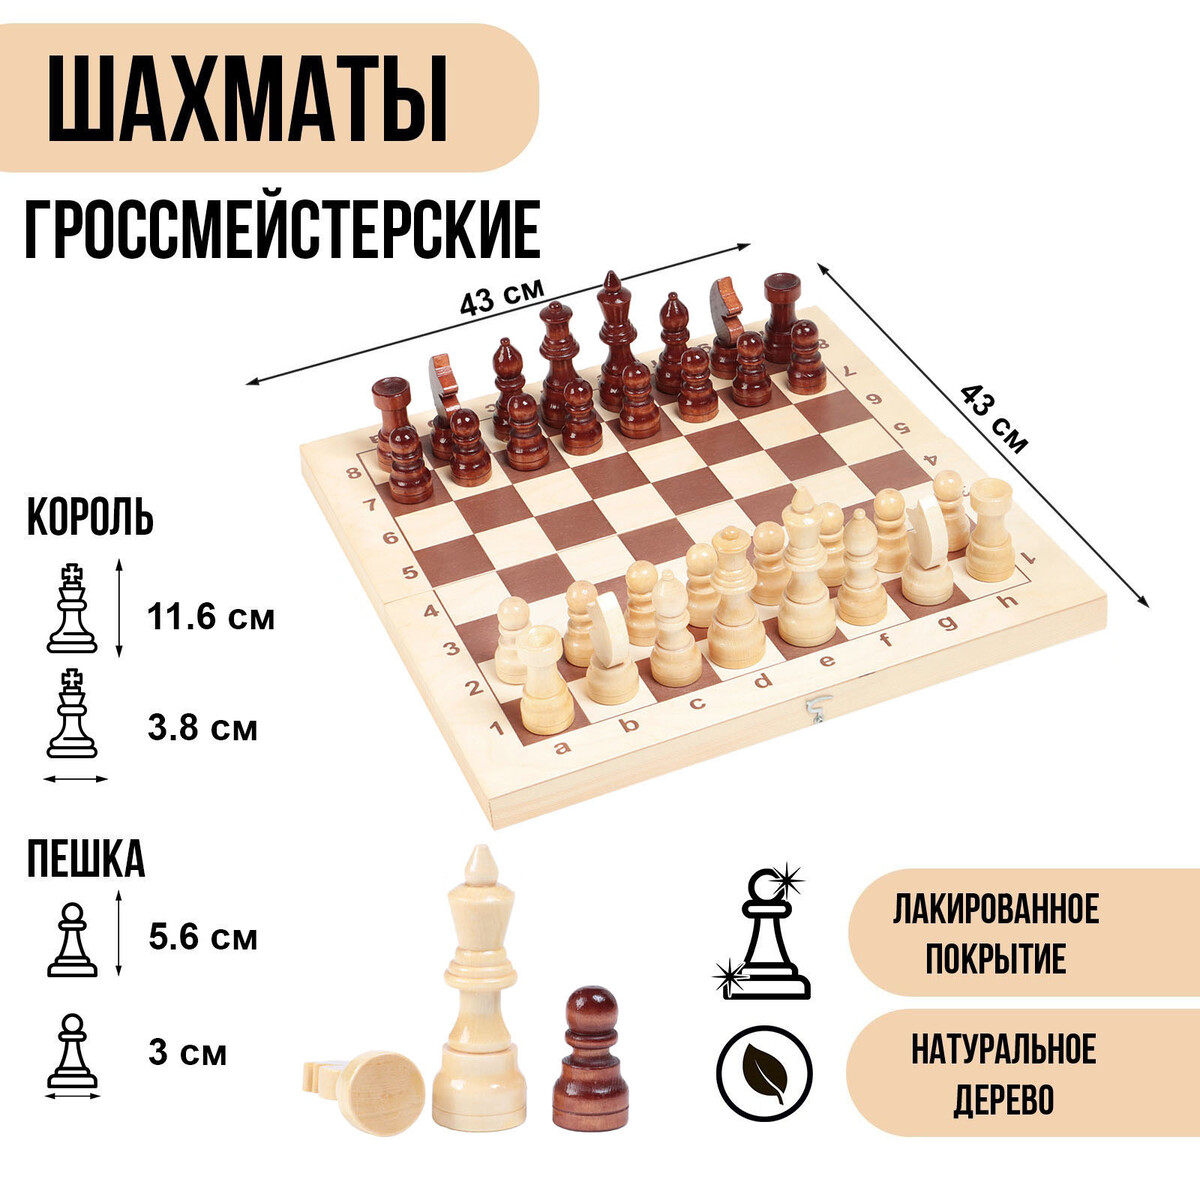 Шахматы деревянные гроссмейстерские, турнирные 43 х 43 см, король h-11.6 см, пешка h-5.6 см